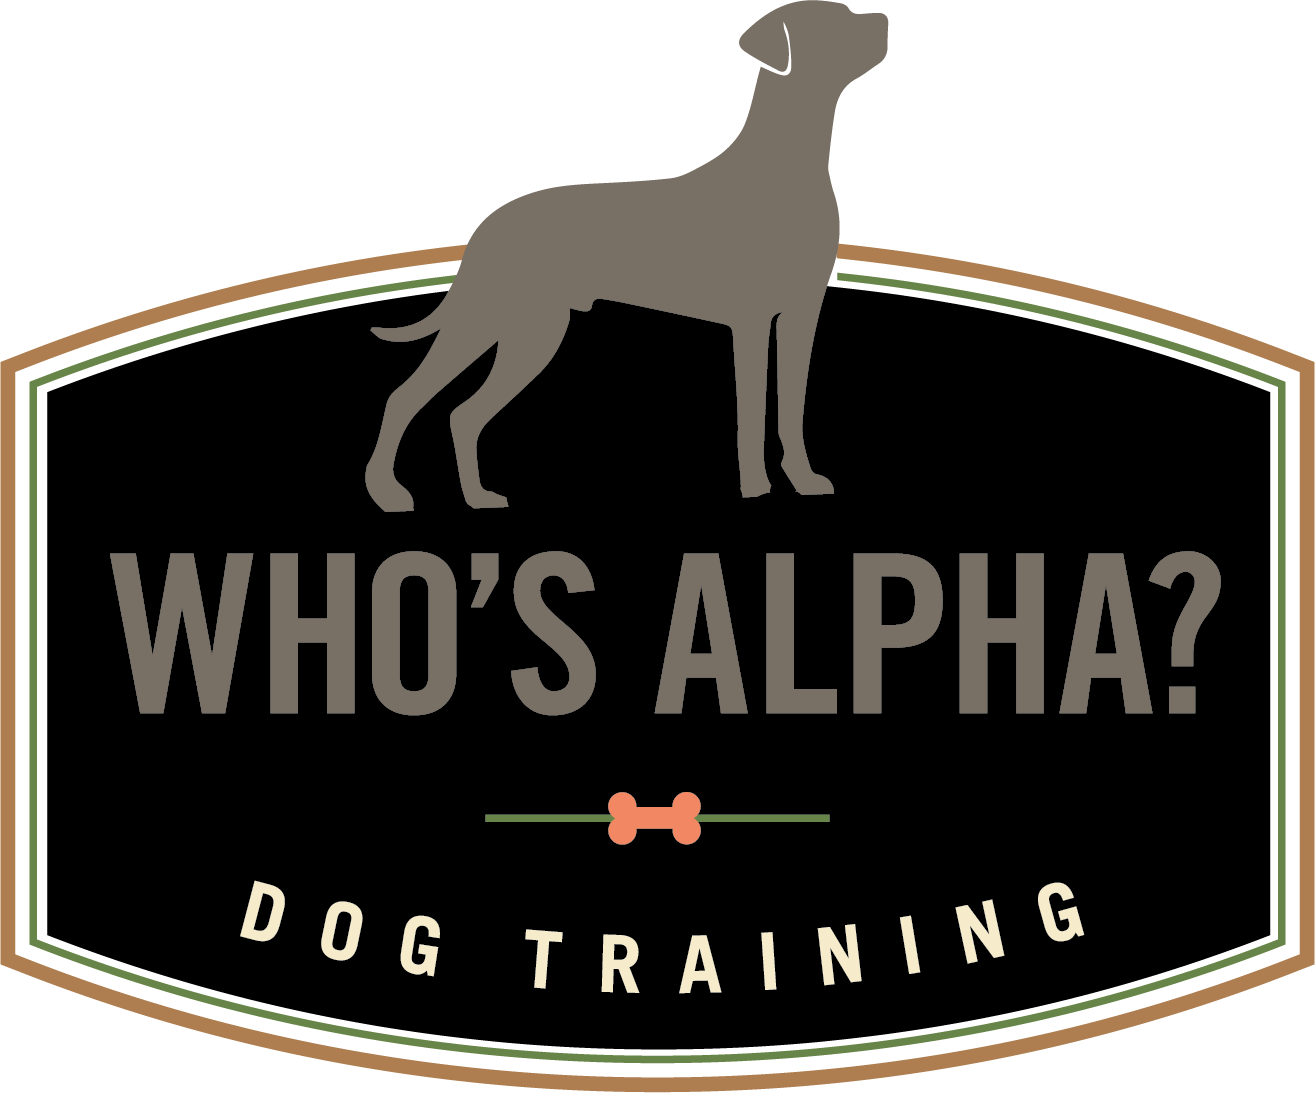 WhosAlpha.com Dog Training 786.558.5556